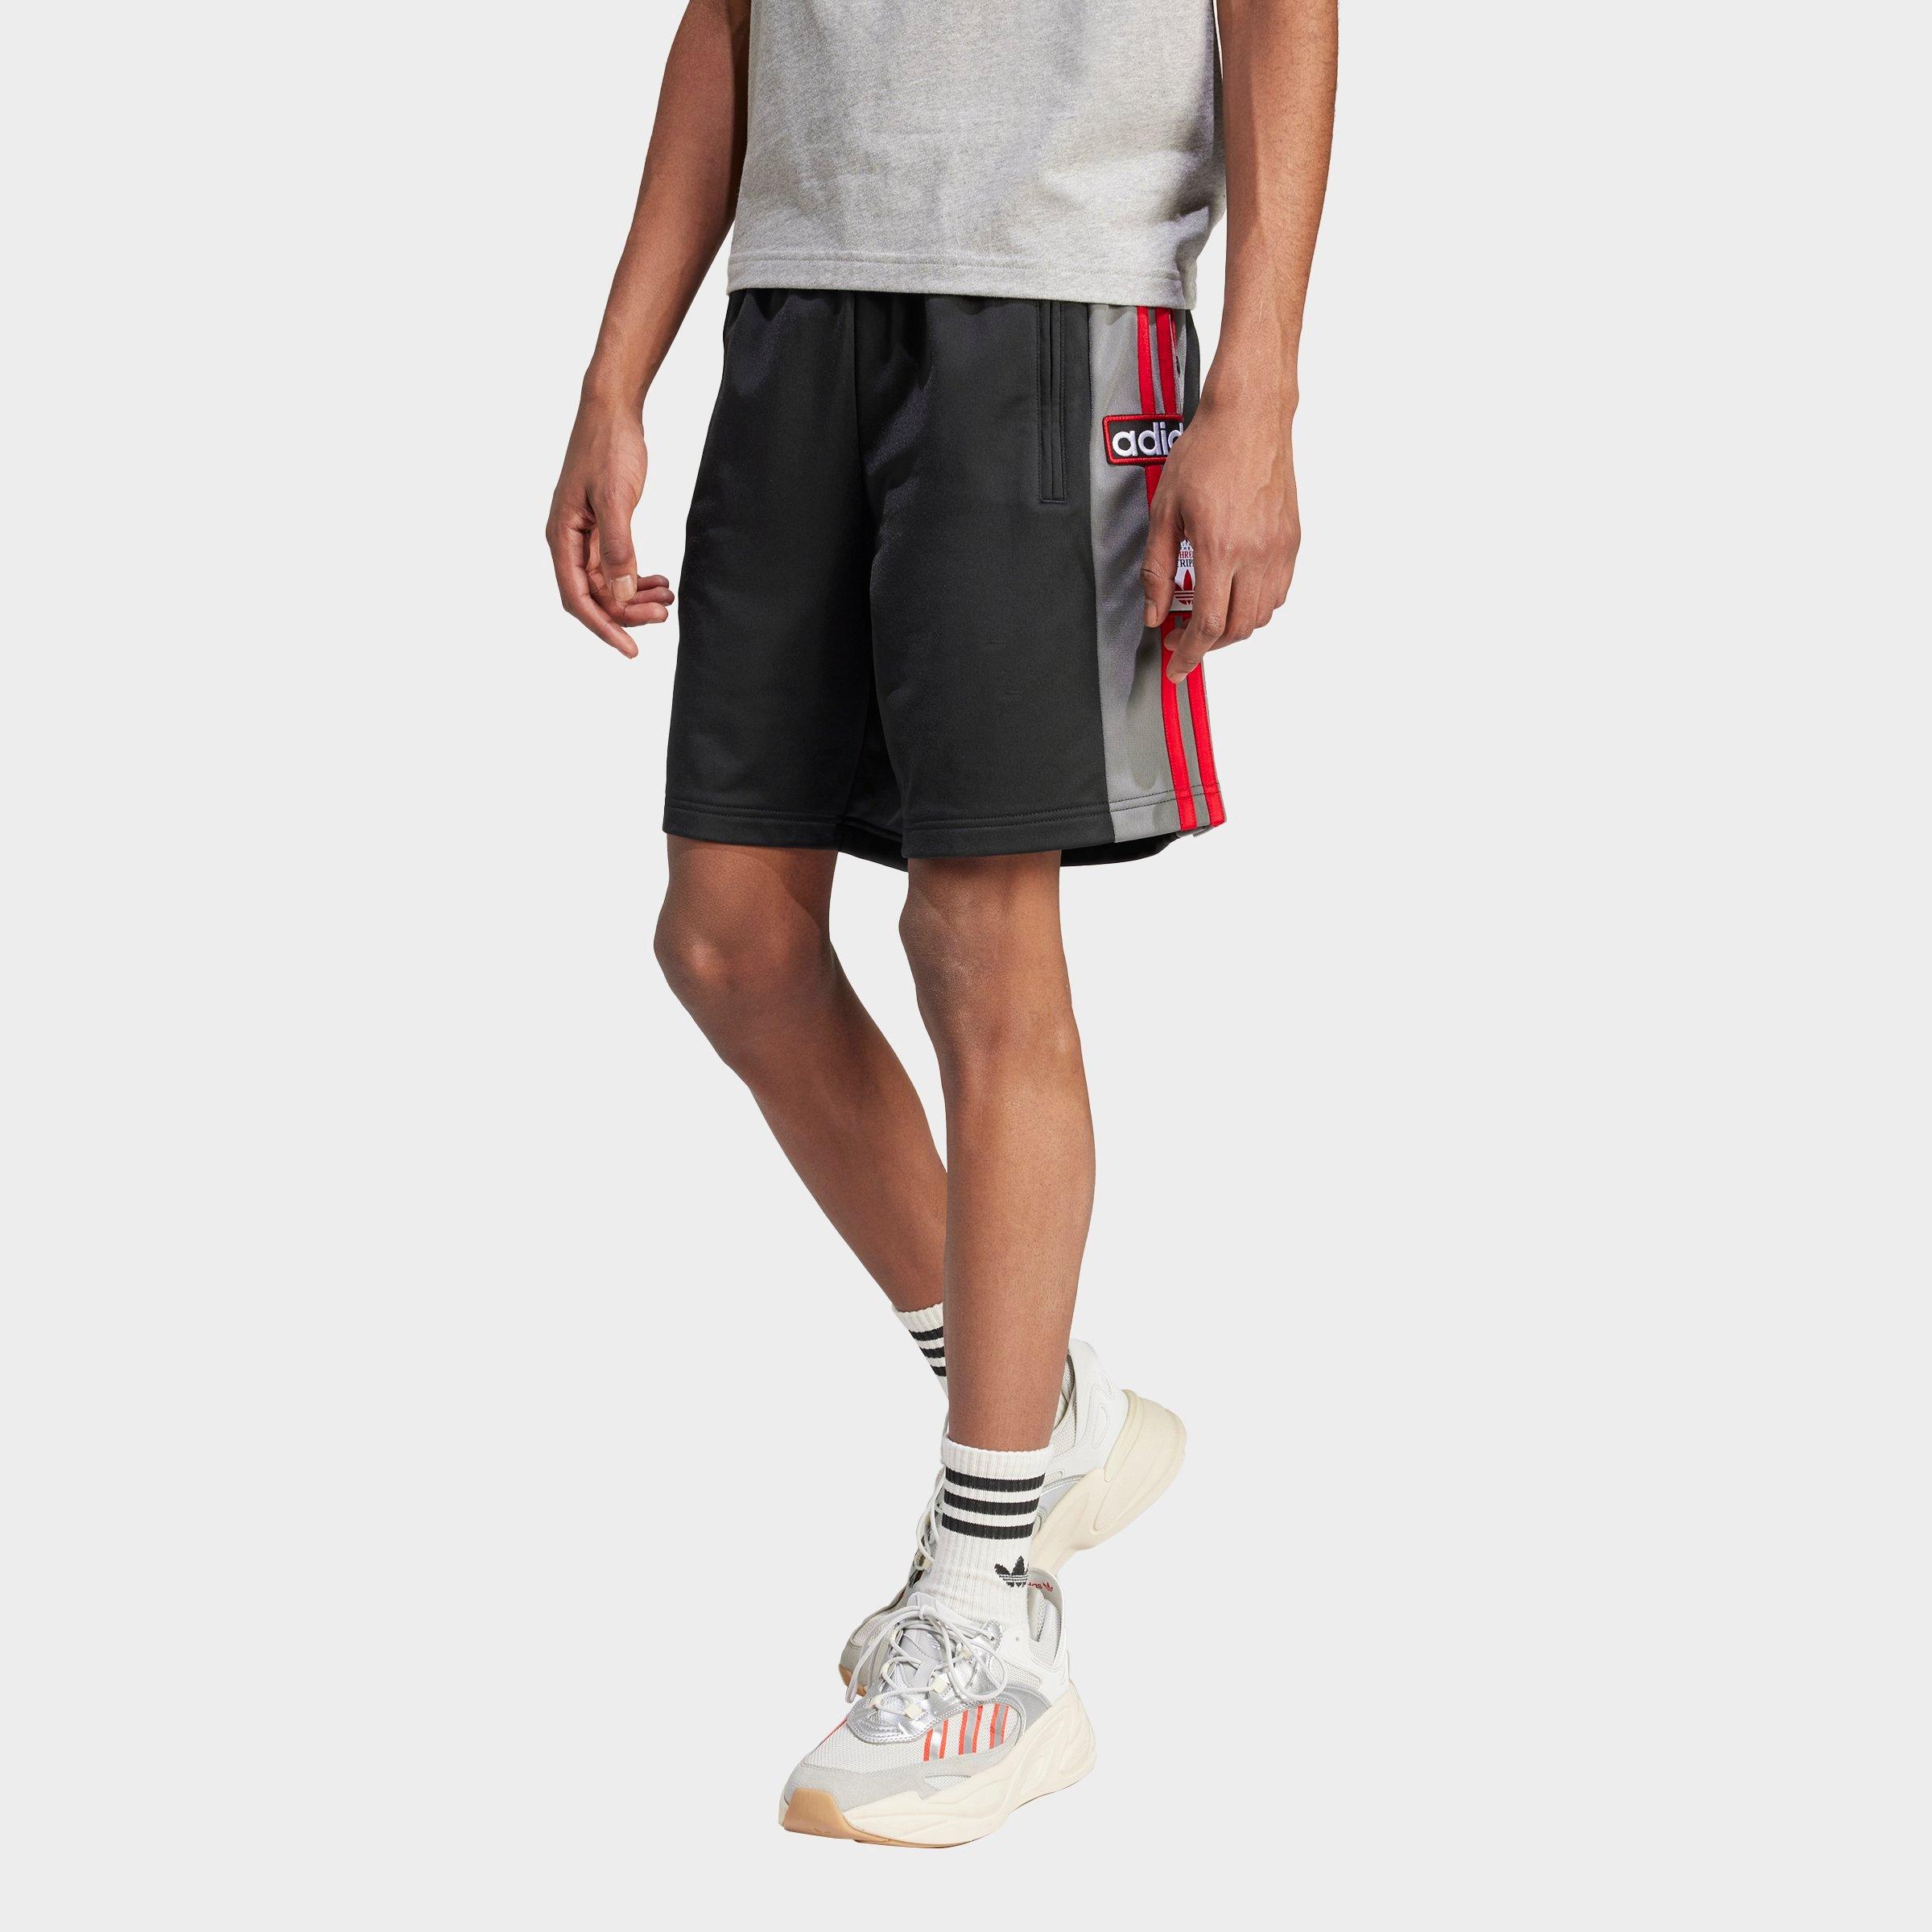 Shop Adidas Originals Adidas Men's Originals Adicolor Adibreak Lifestyle Shorts In Black/grey/better Scarlet